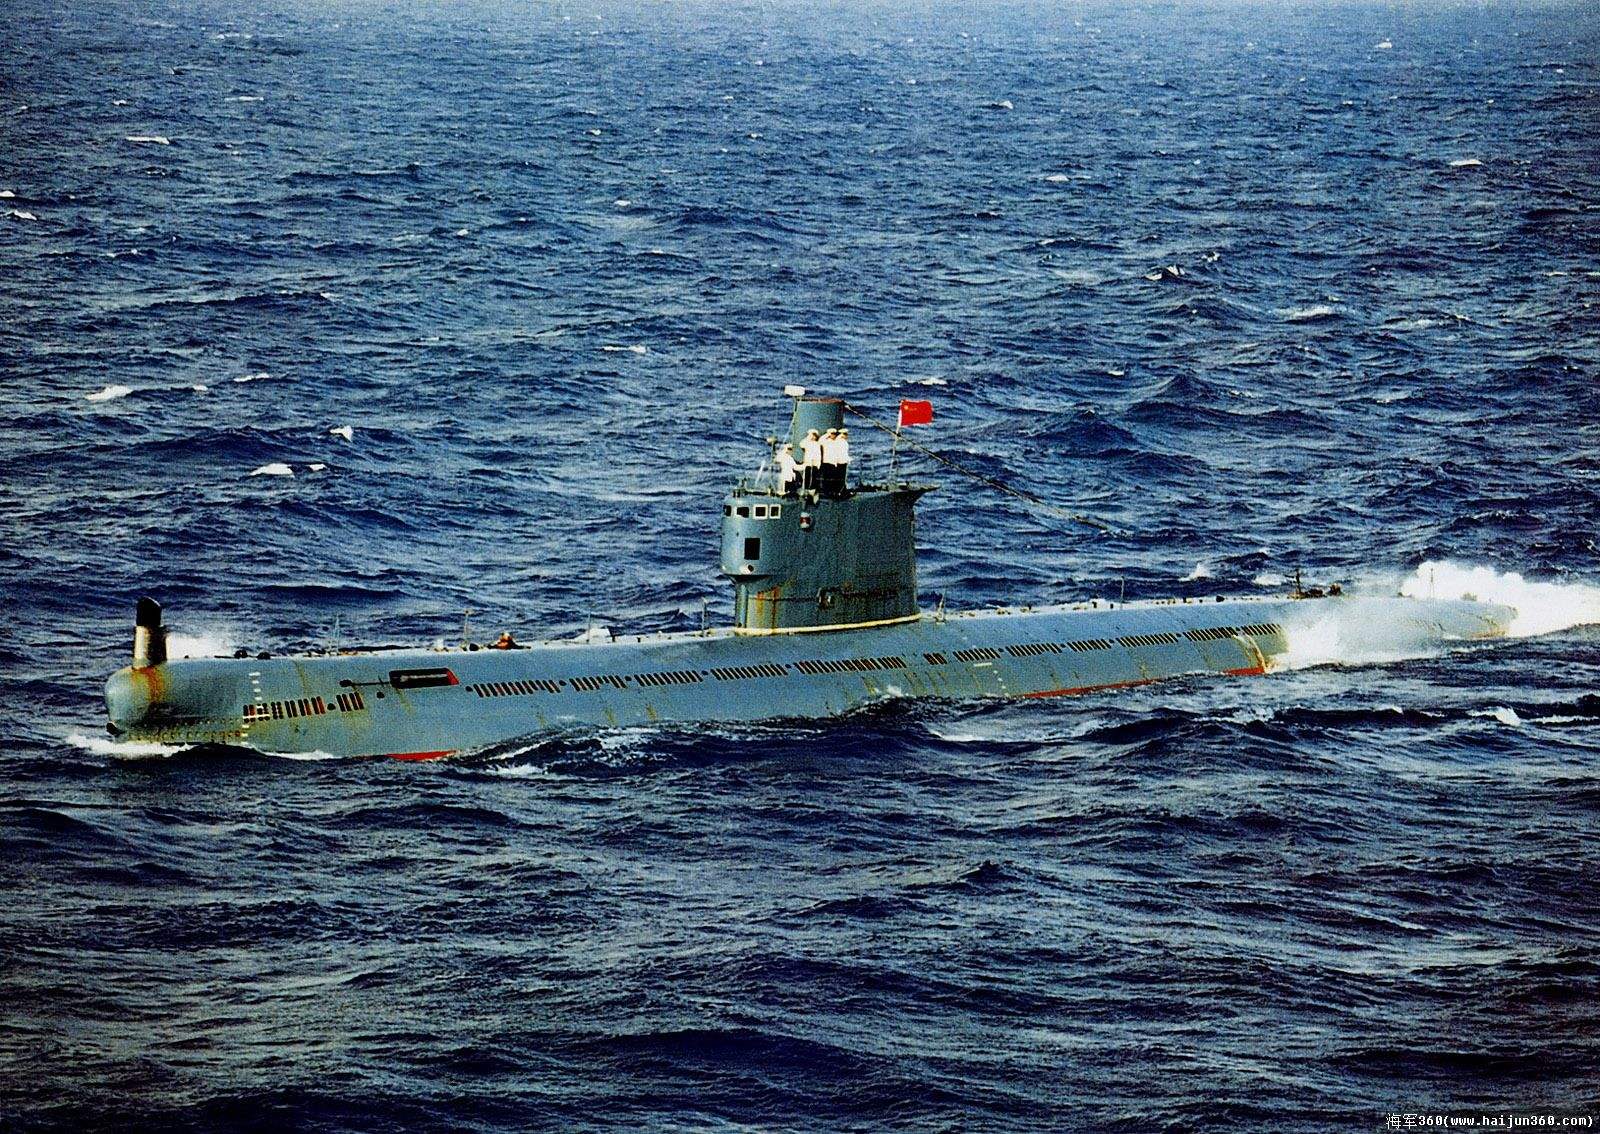 一大波高清美图！70年了，今天我们为他们而转发！致敬日益强大的中国海军！